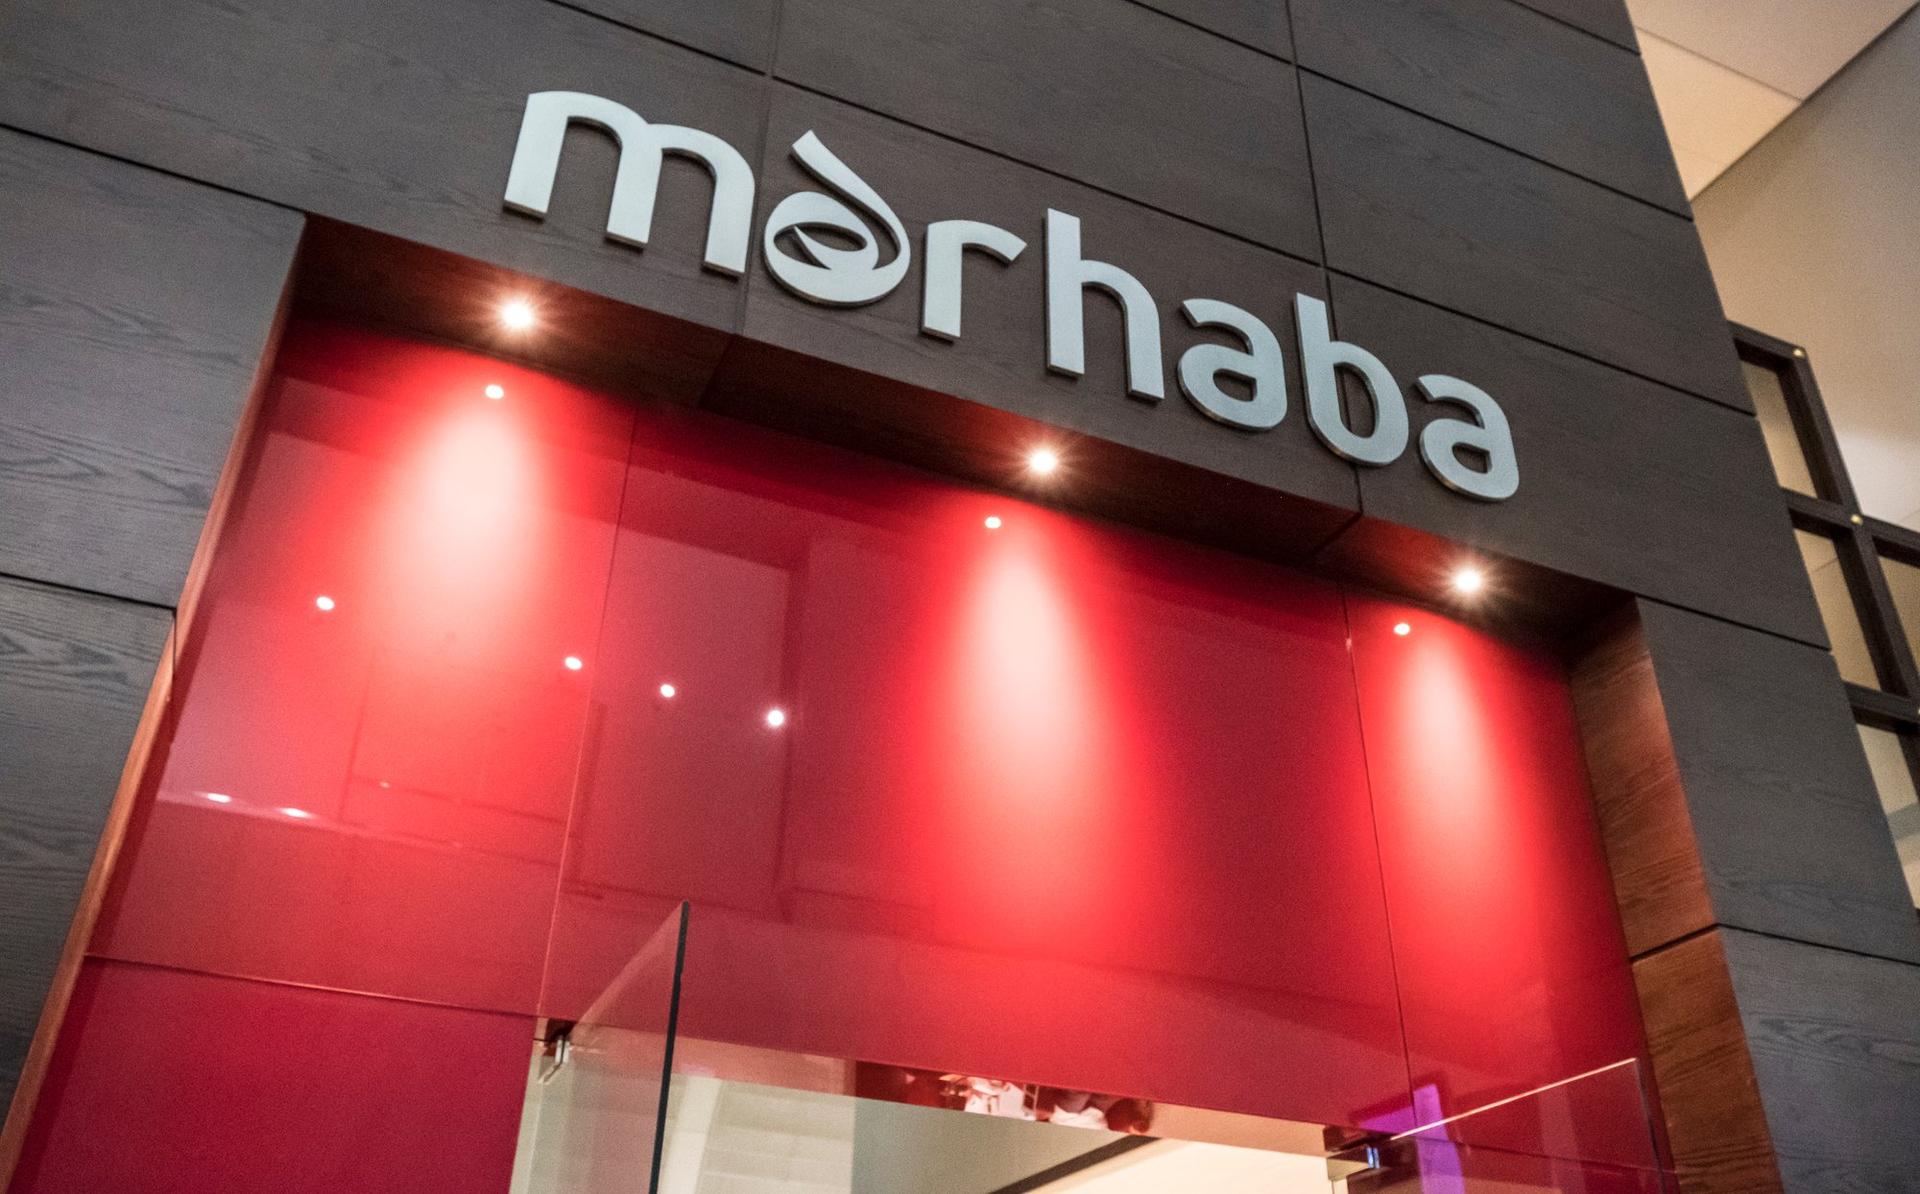 Marhaba Lounge image 53 of 64